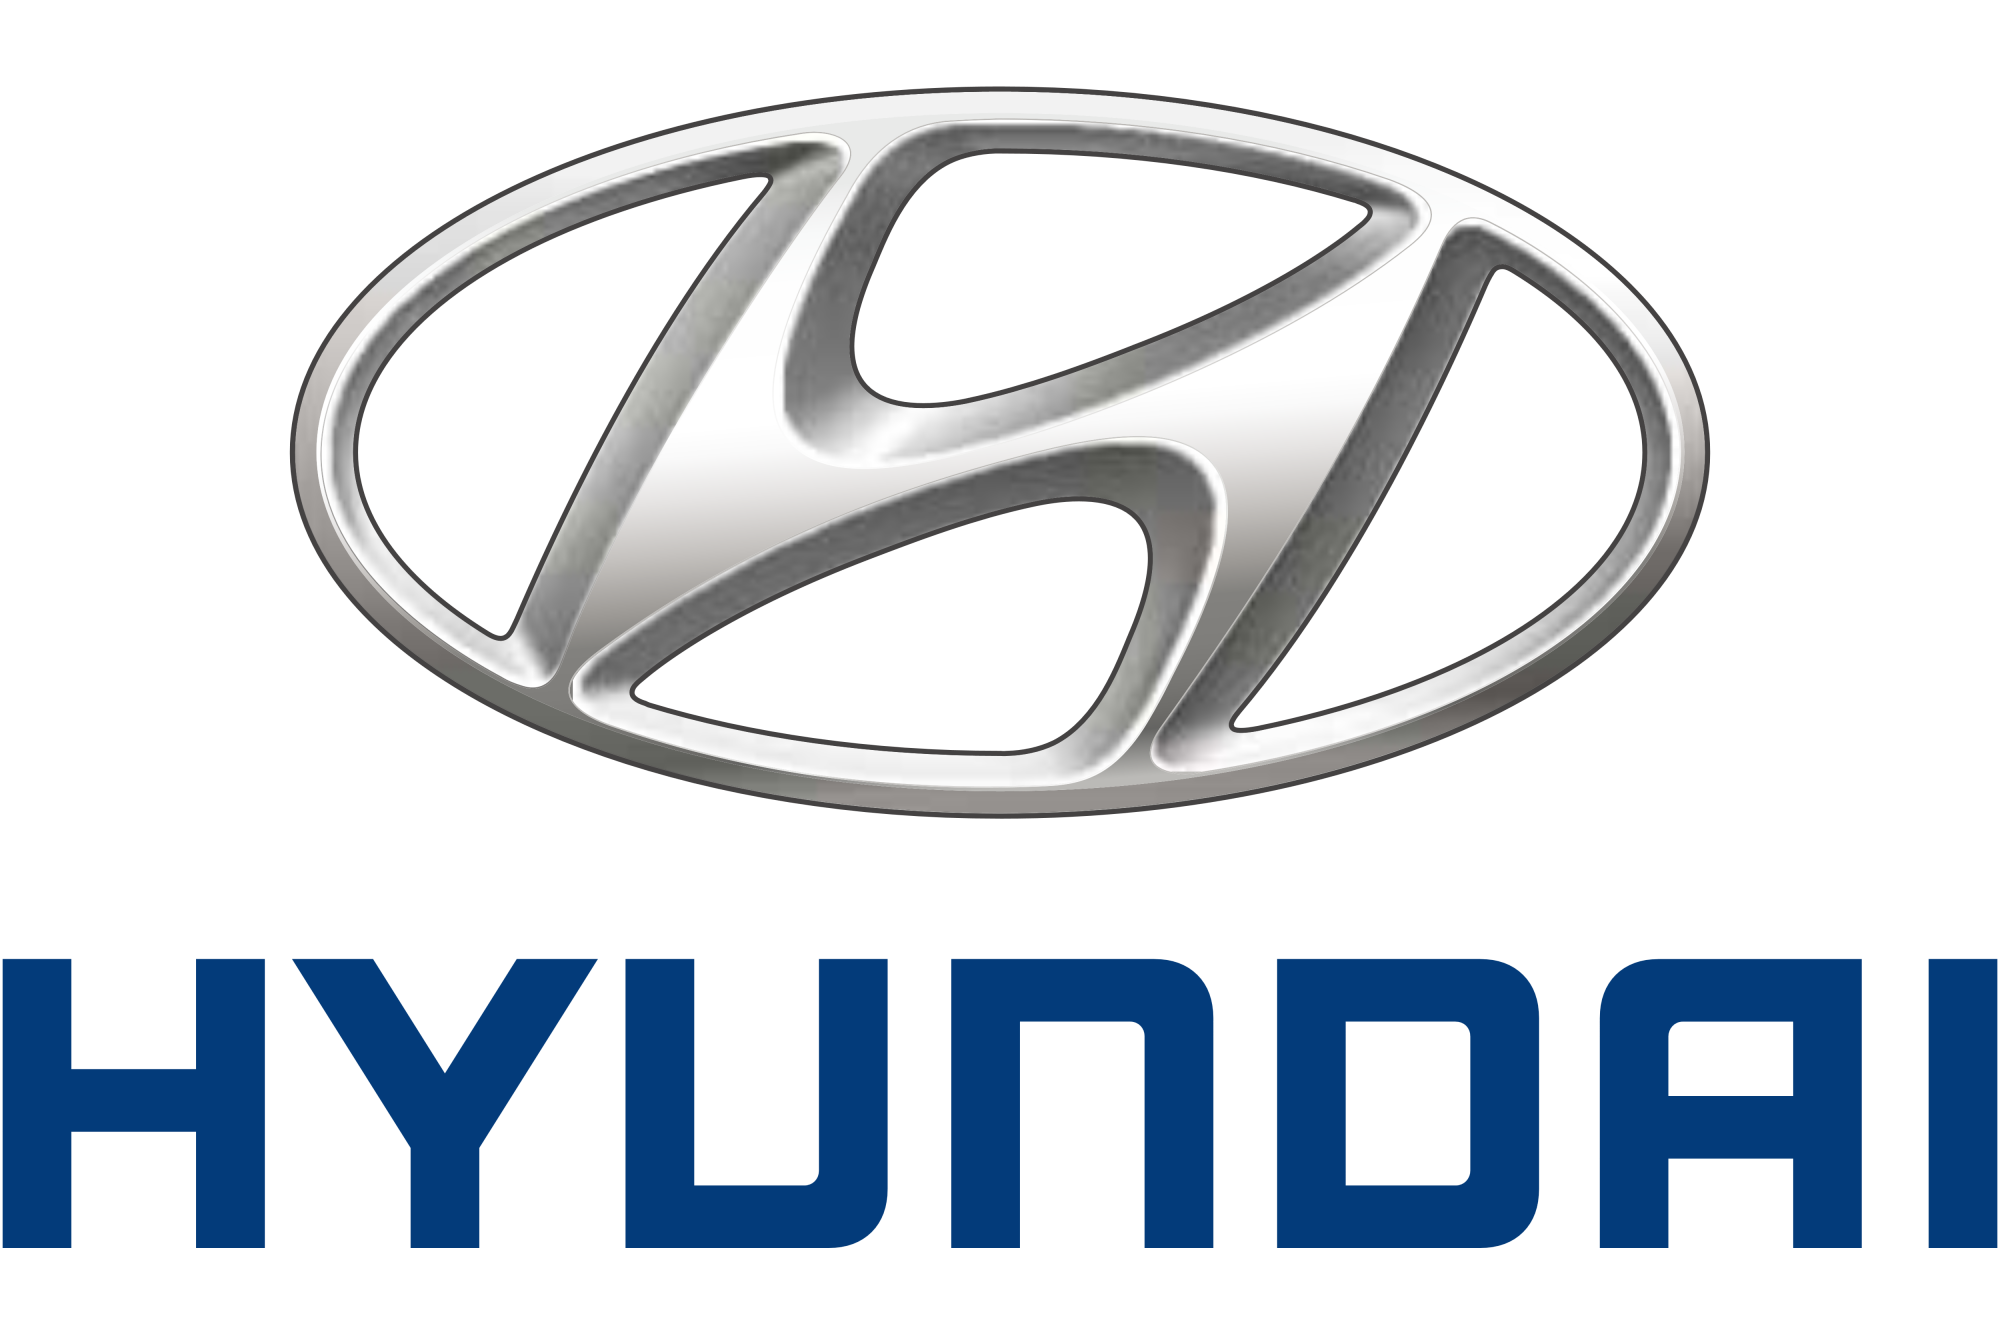 Επέκταση εργοστασιακής εγγύησης από την Hyundai